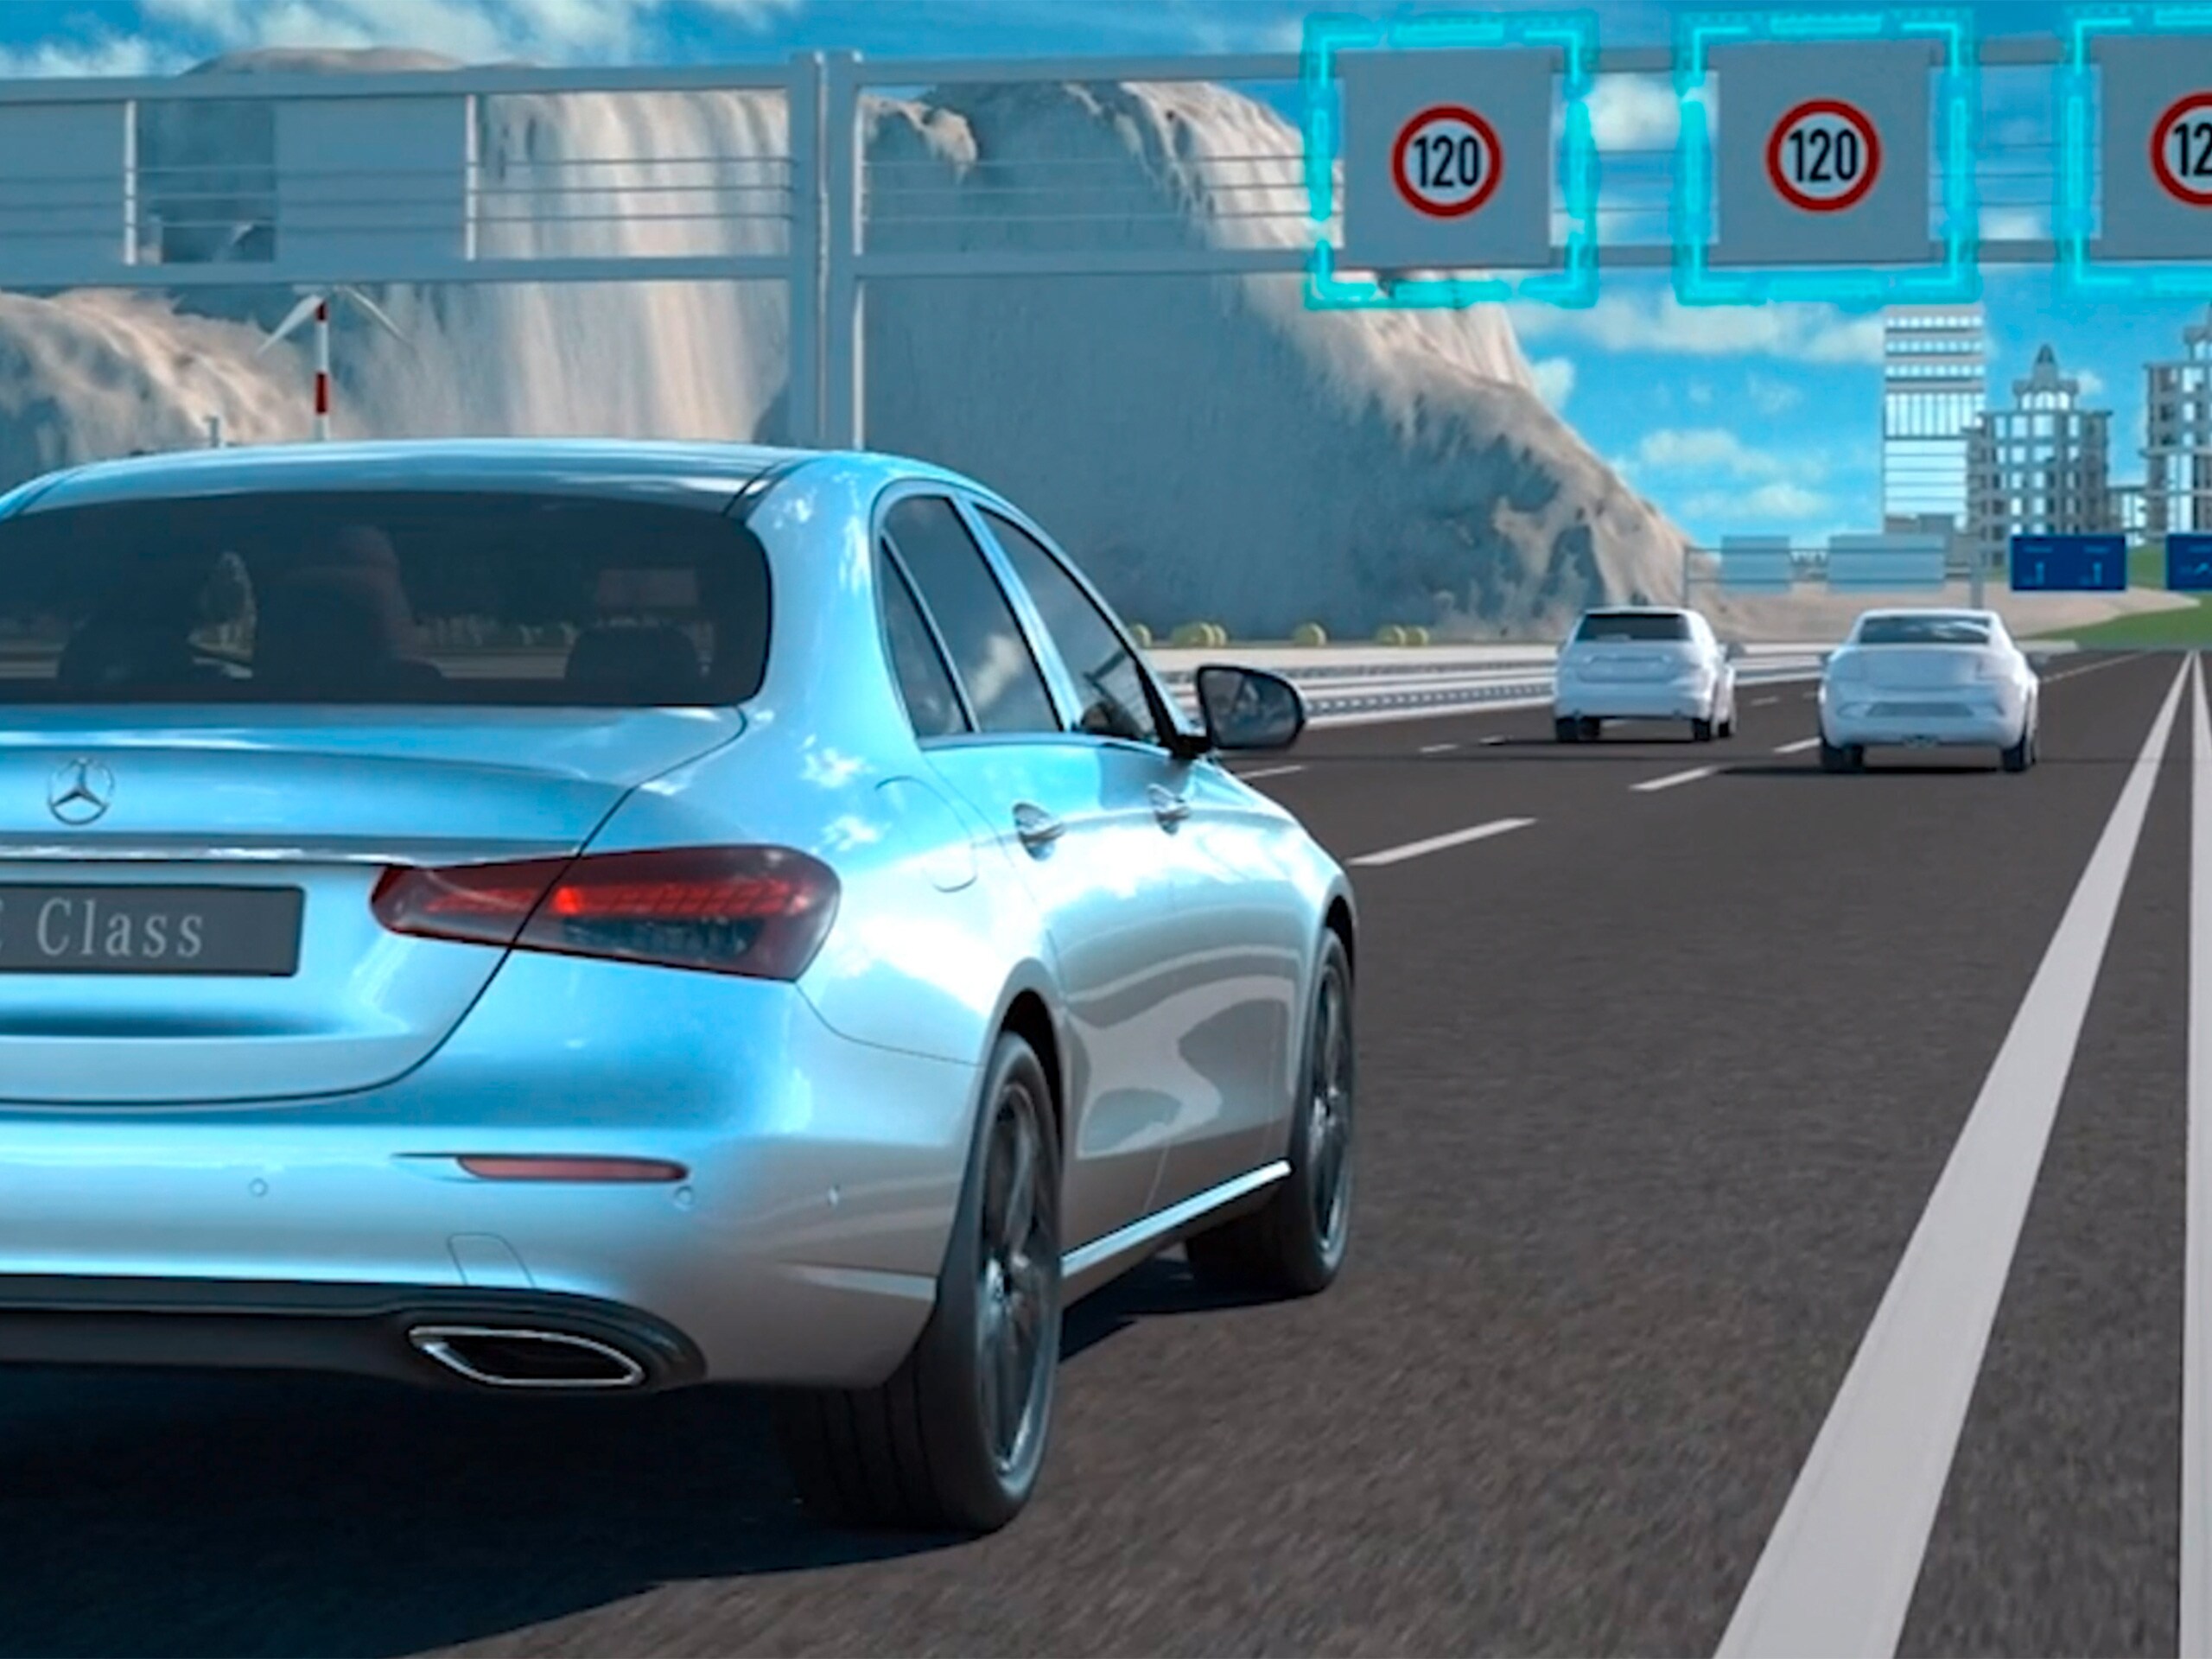 Videoda, Mercedes-Benz CLS Coupé'deki aktif hız sınırı yardımcısının fonksiyonları gösterilmektedir.